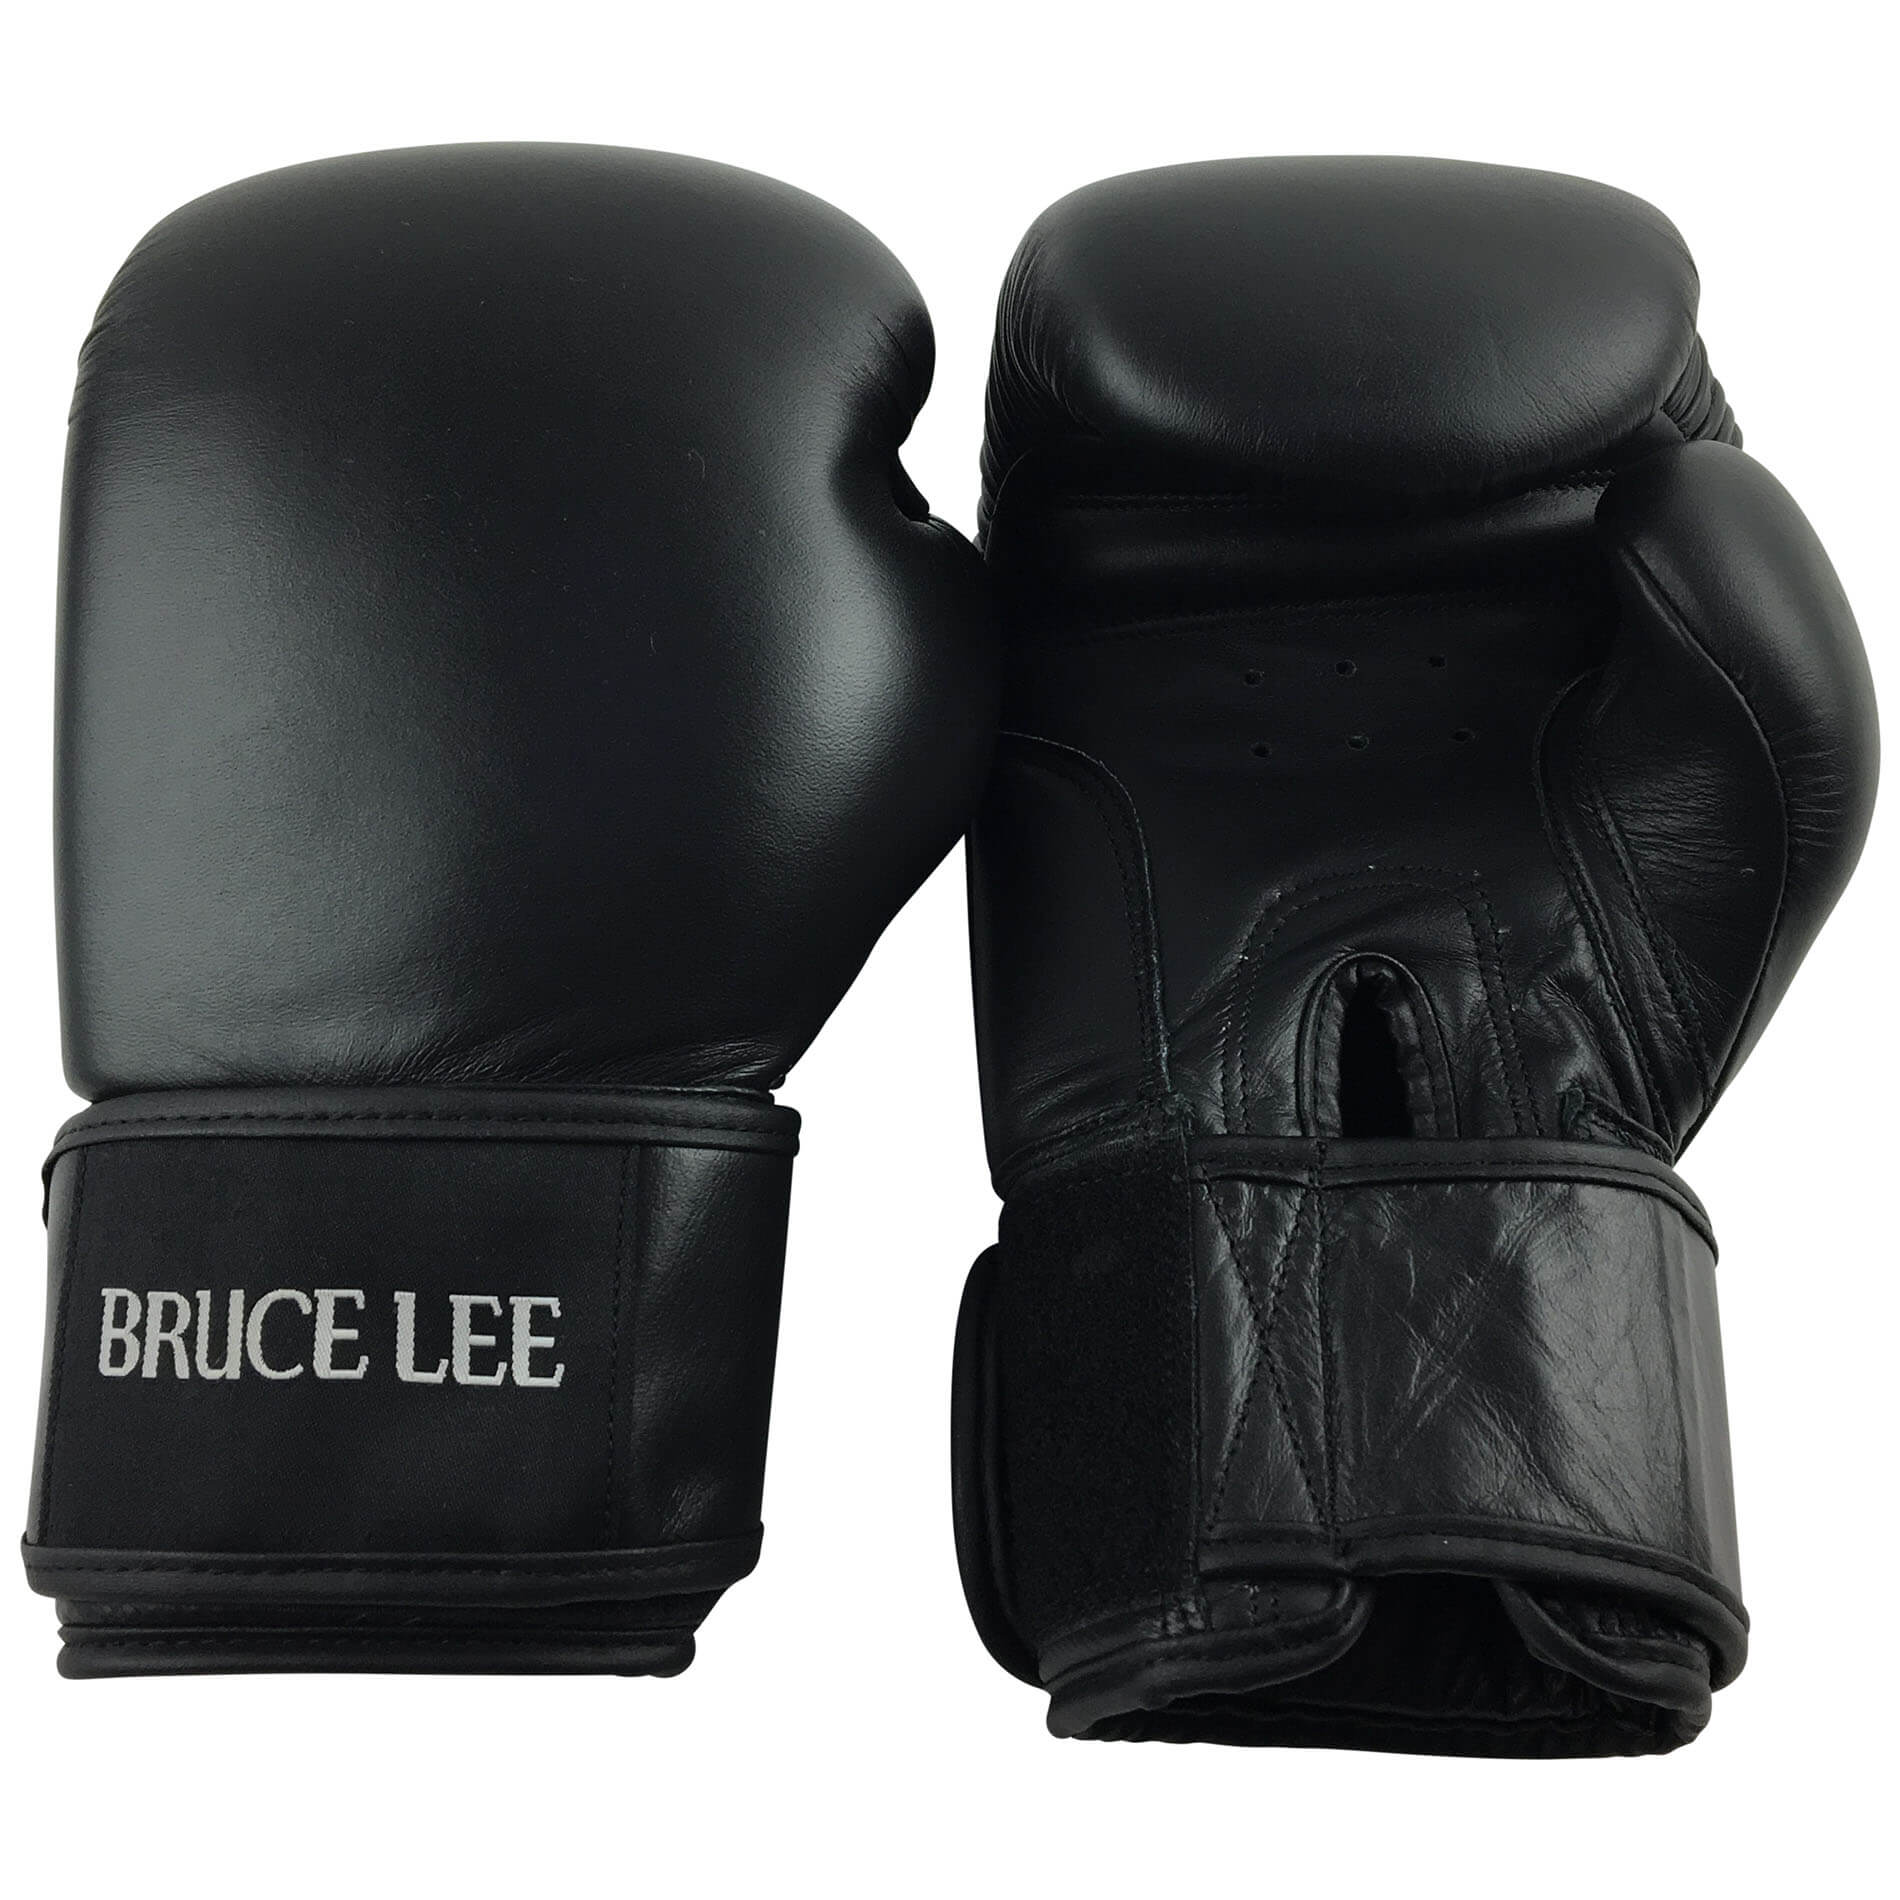 Boxerské rukavice BRUCE LEE Allround PRO vel. 14 oz